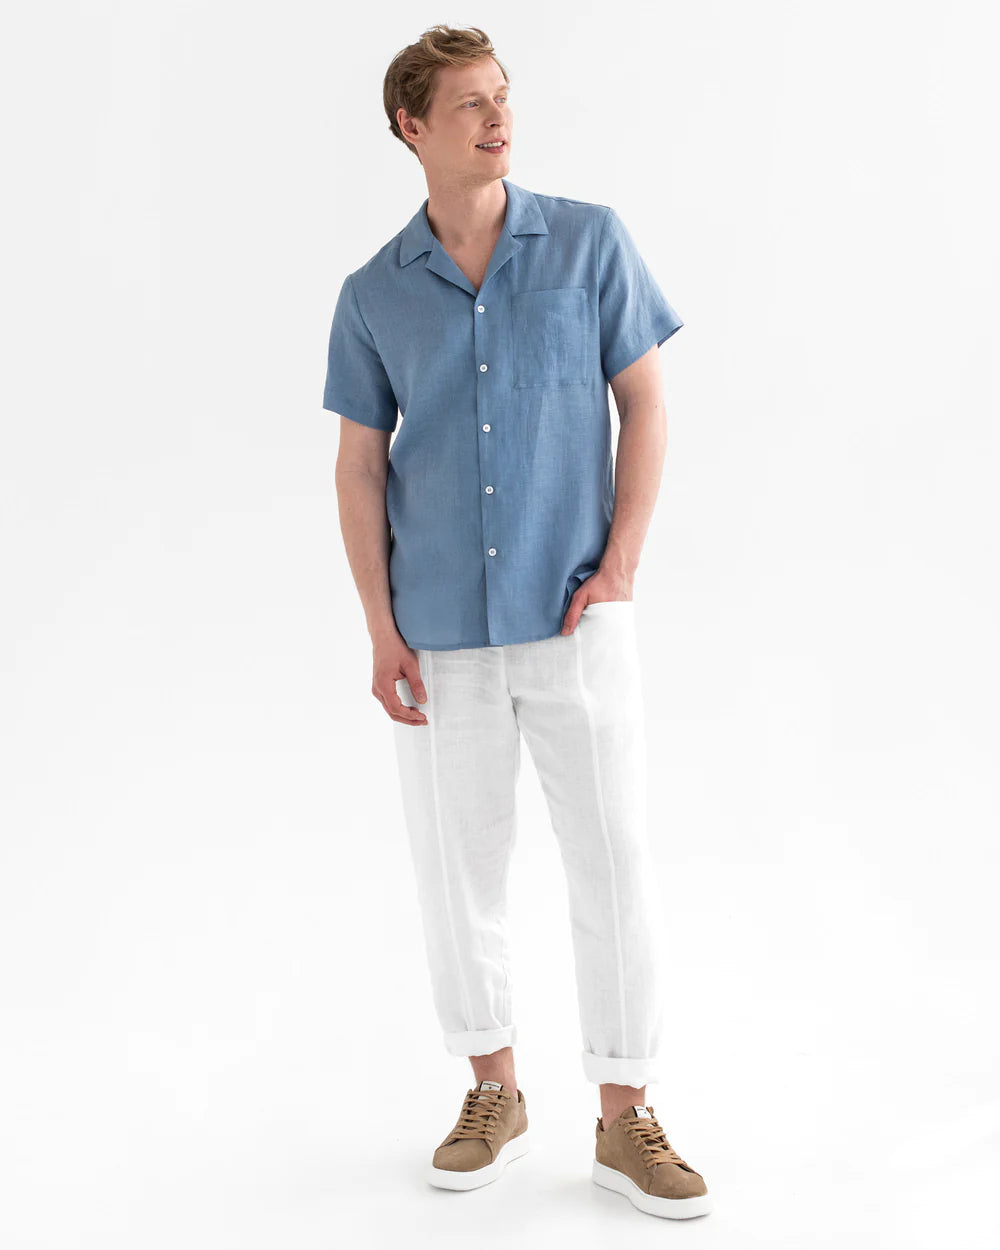 Hawi-2 - Linen - Shirt 